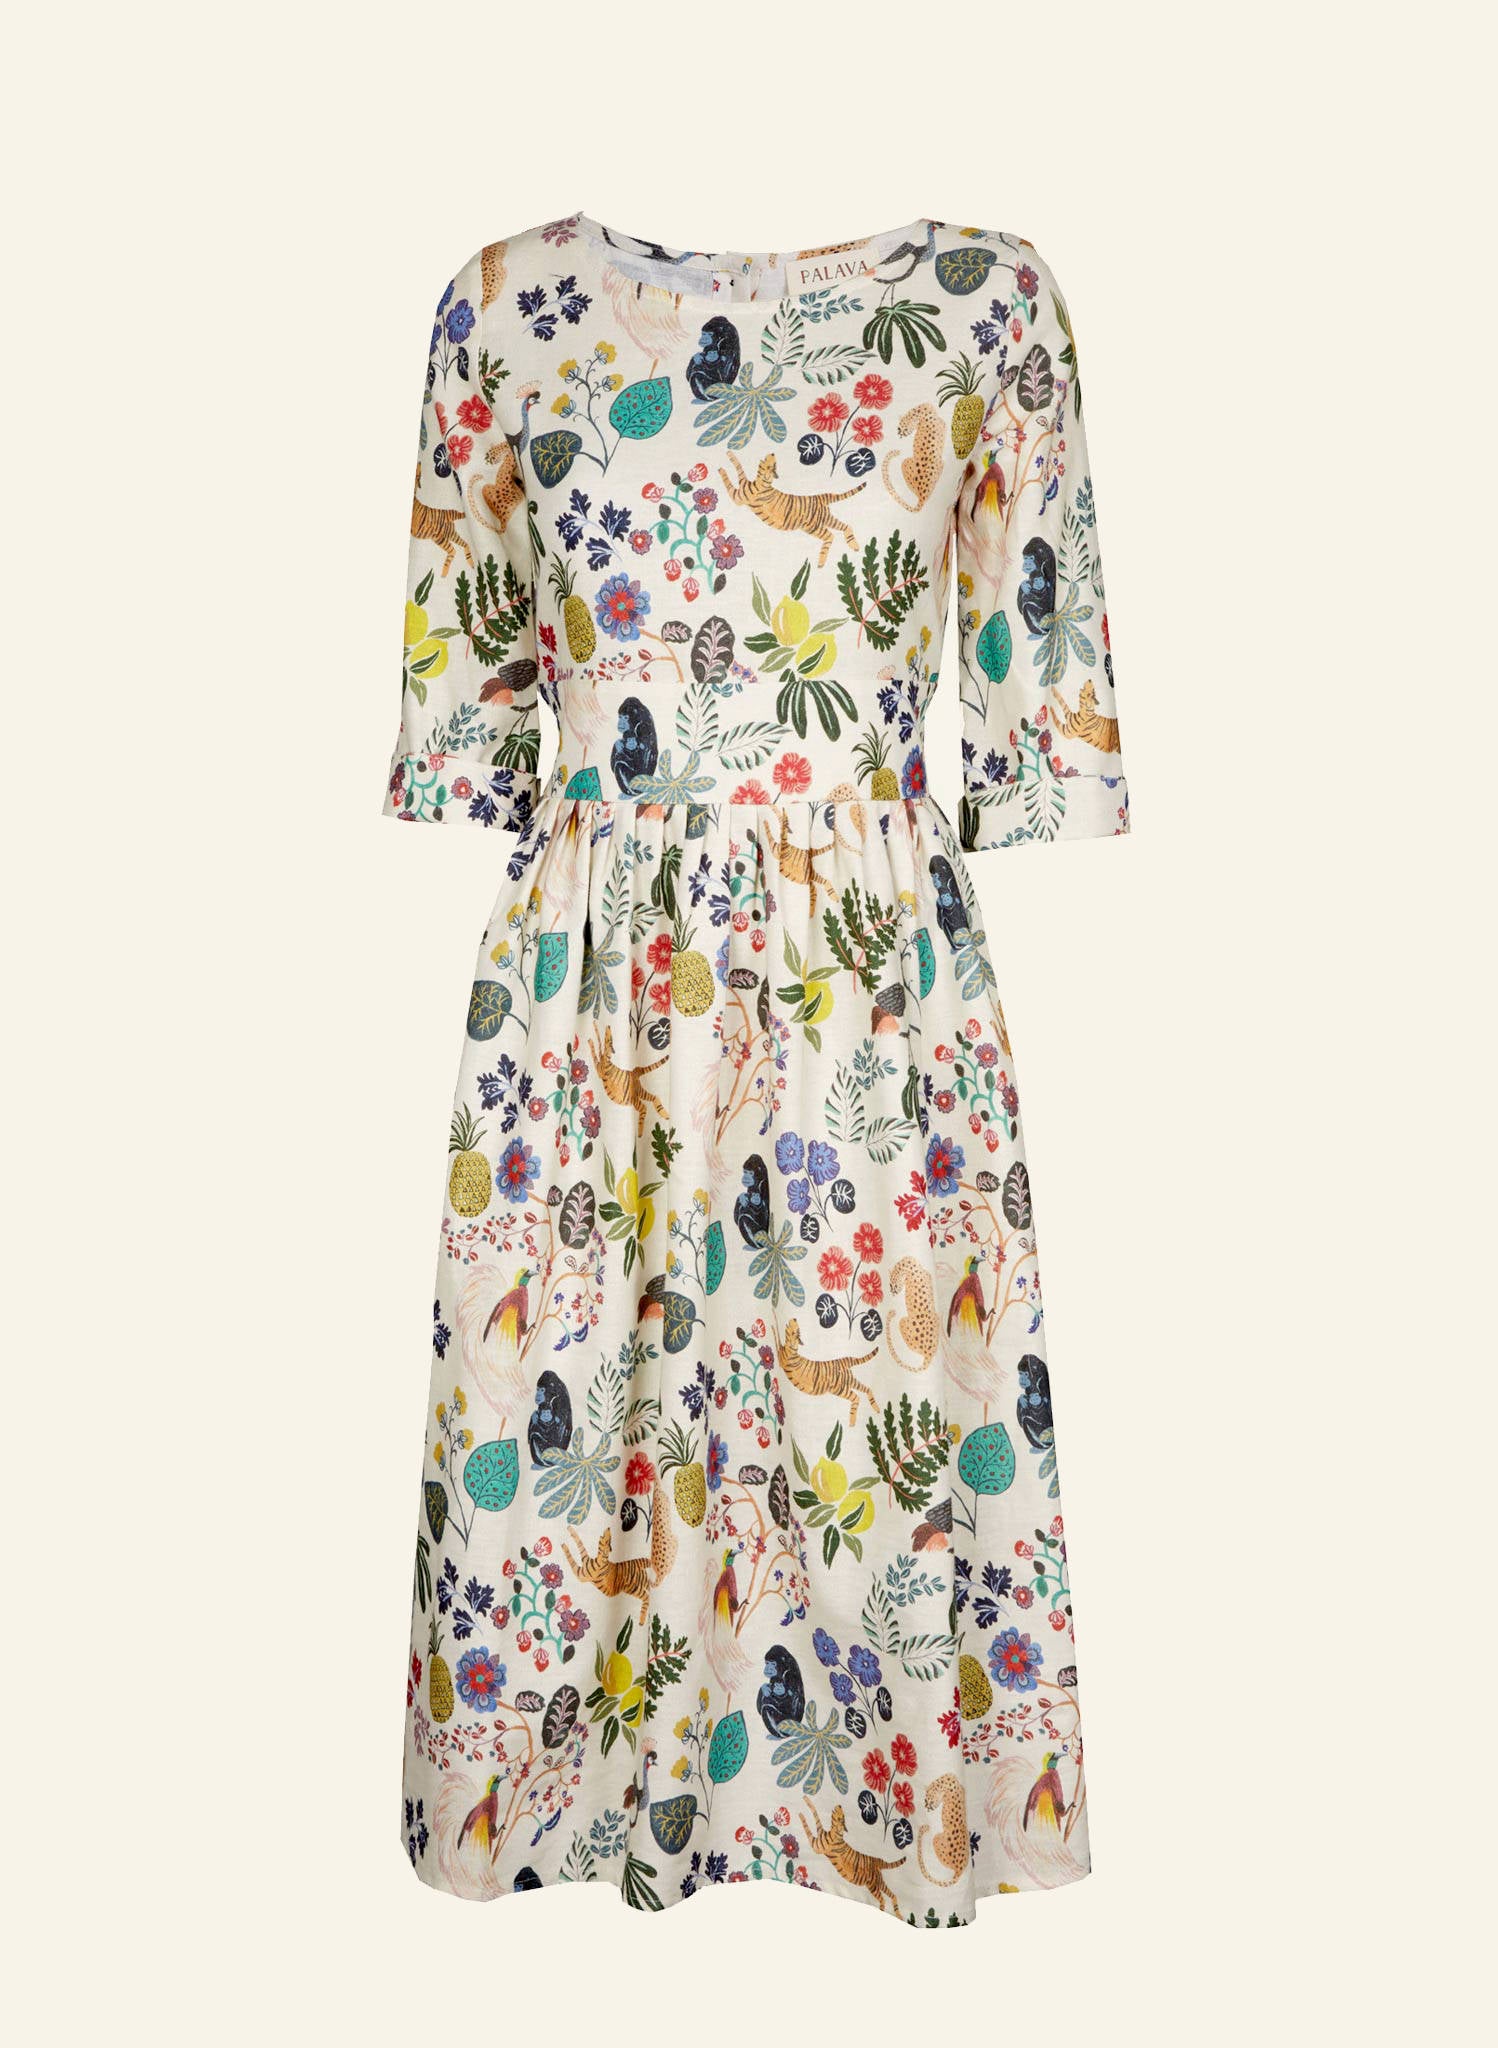 Philippa - Paradise Garden Dress | Cotton - Linen Blend